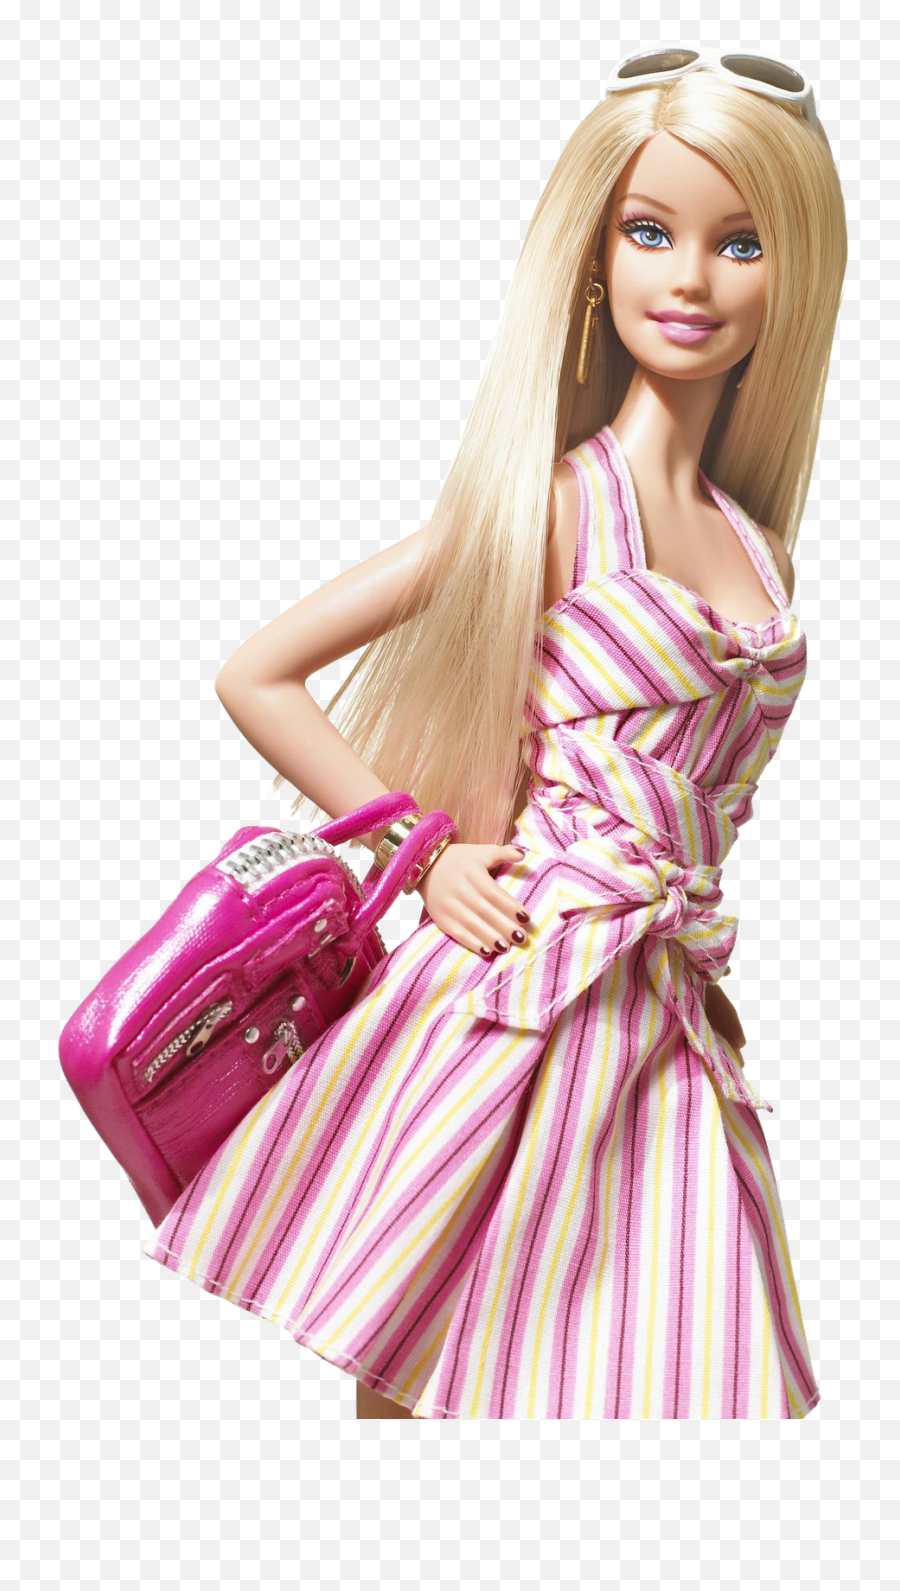 Download Barbie Transparent Background - Barbie Dolls Transparent Background Png,Barbie Transparent Background